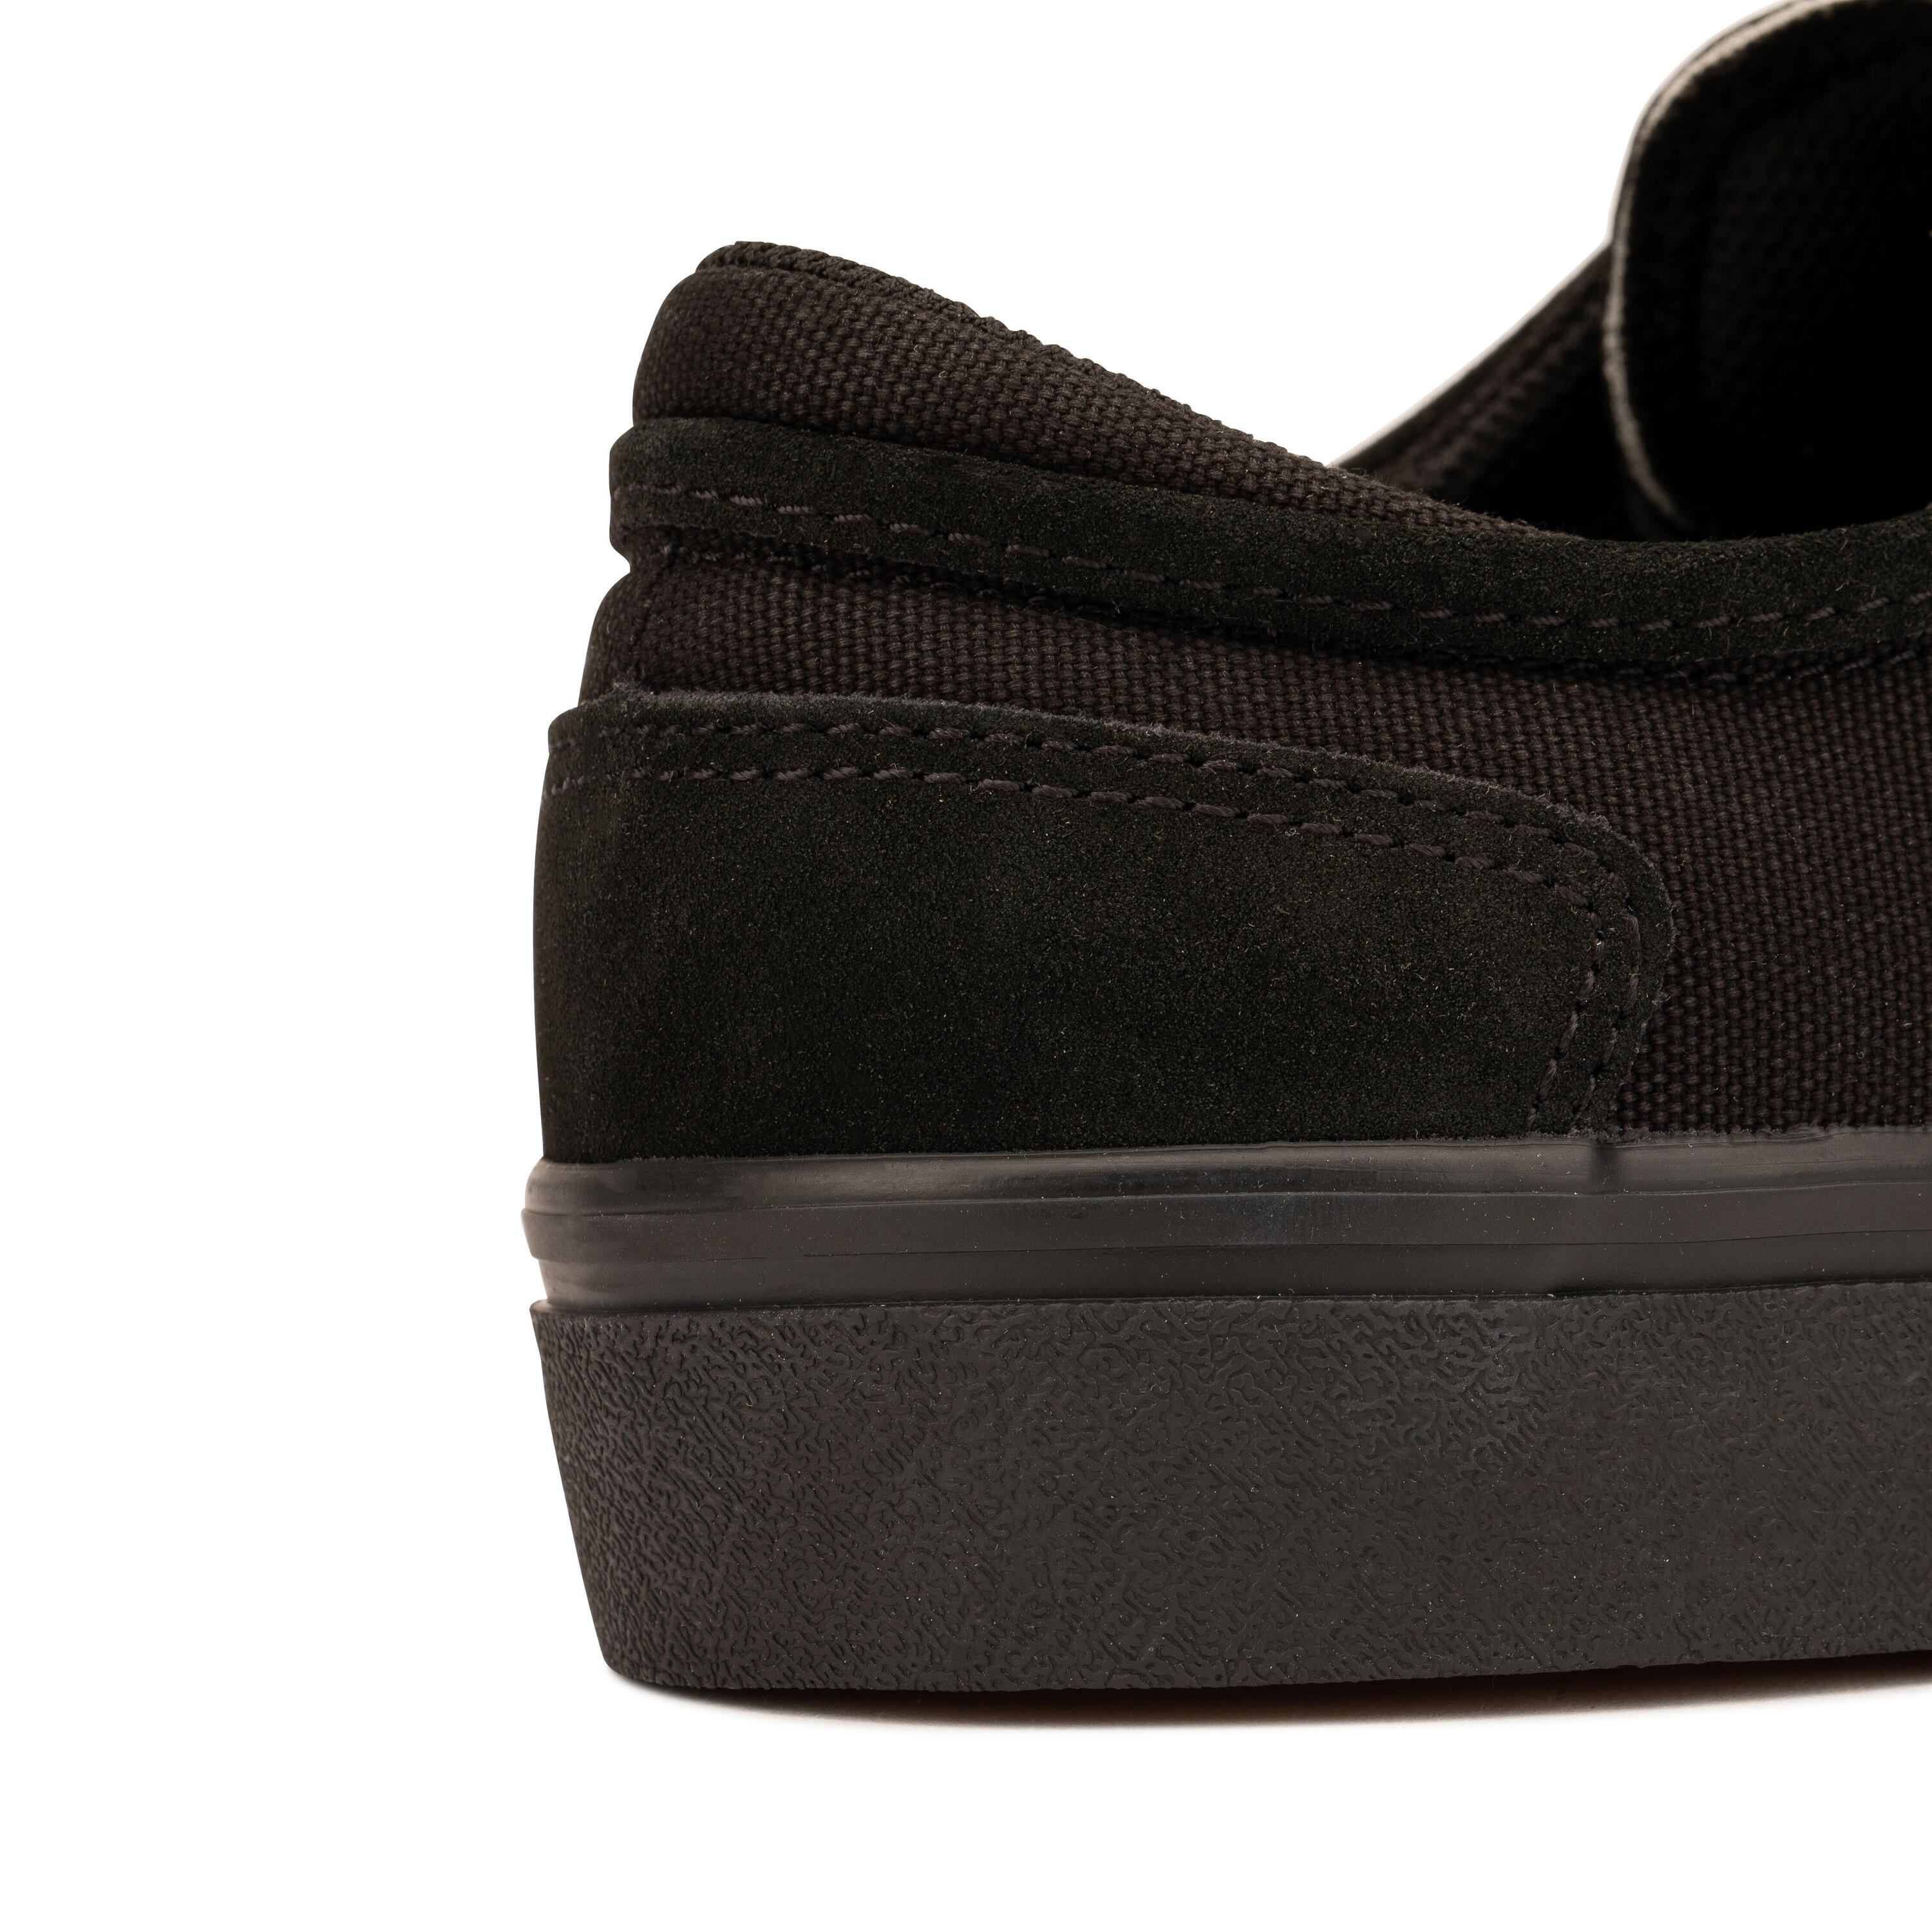 Adult Vulcanised Skate Shoes Vulca 500 II - Black/Black 17/17